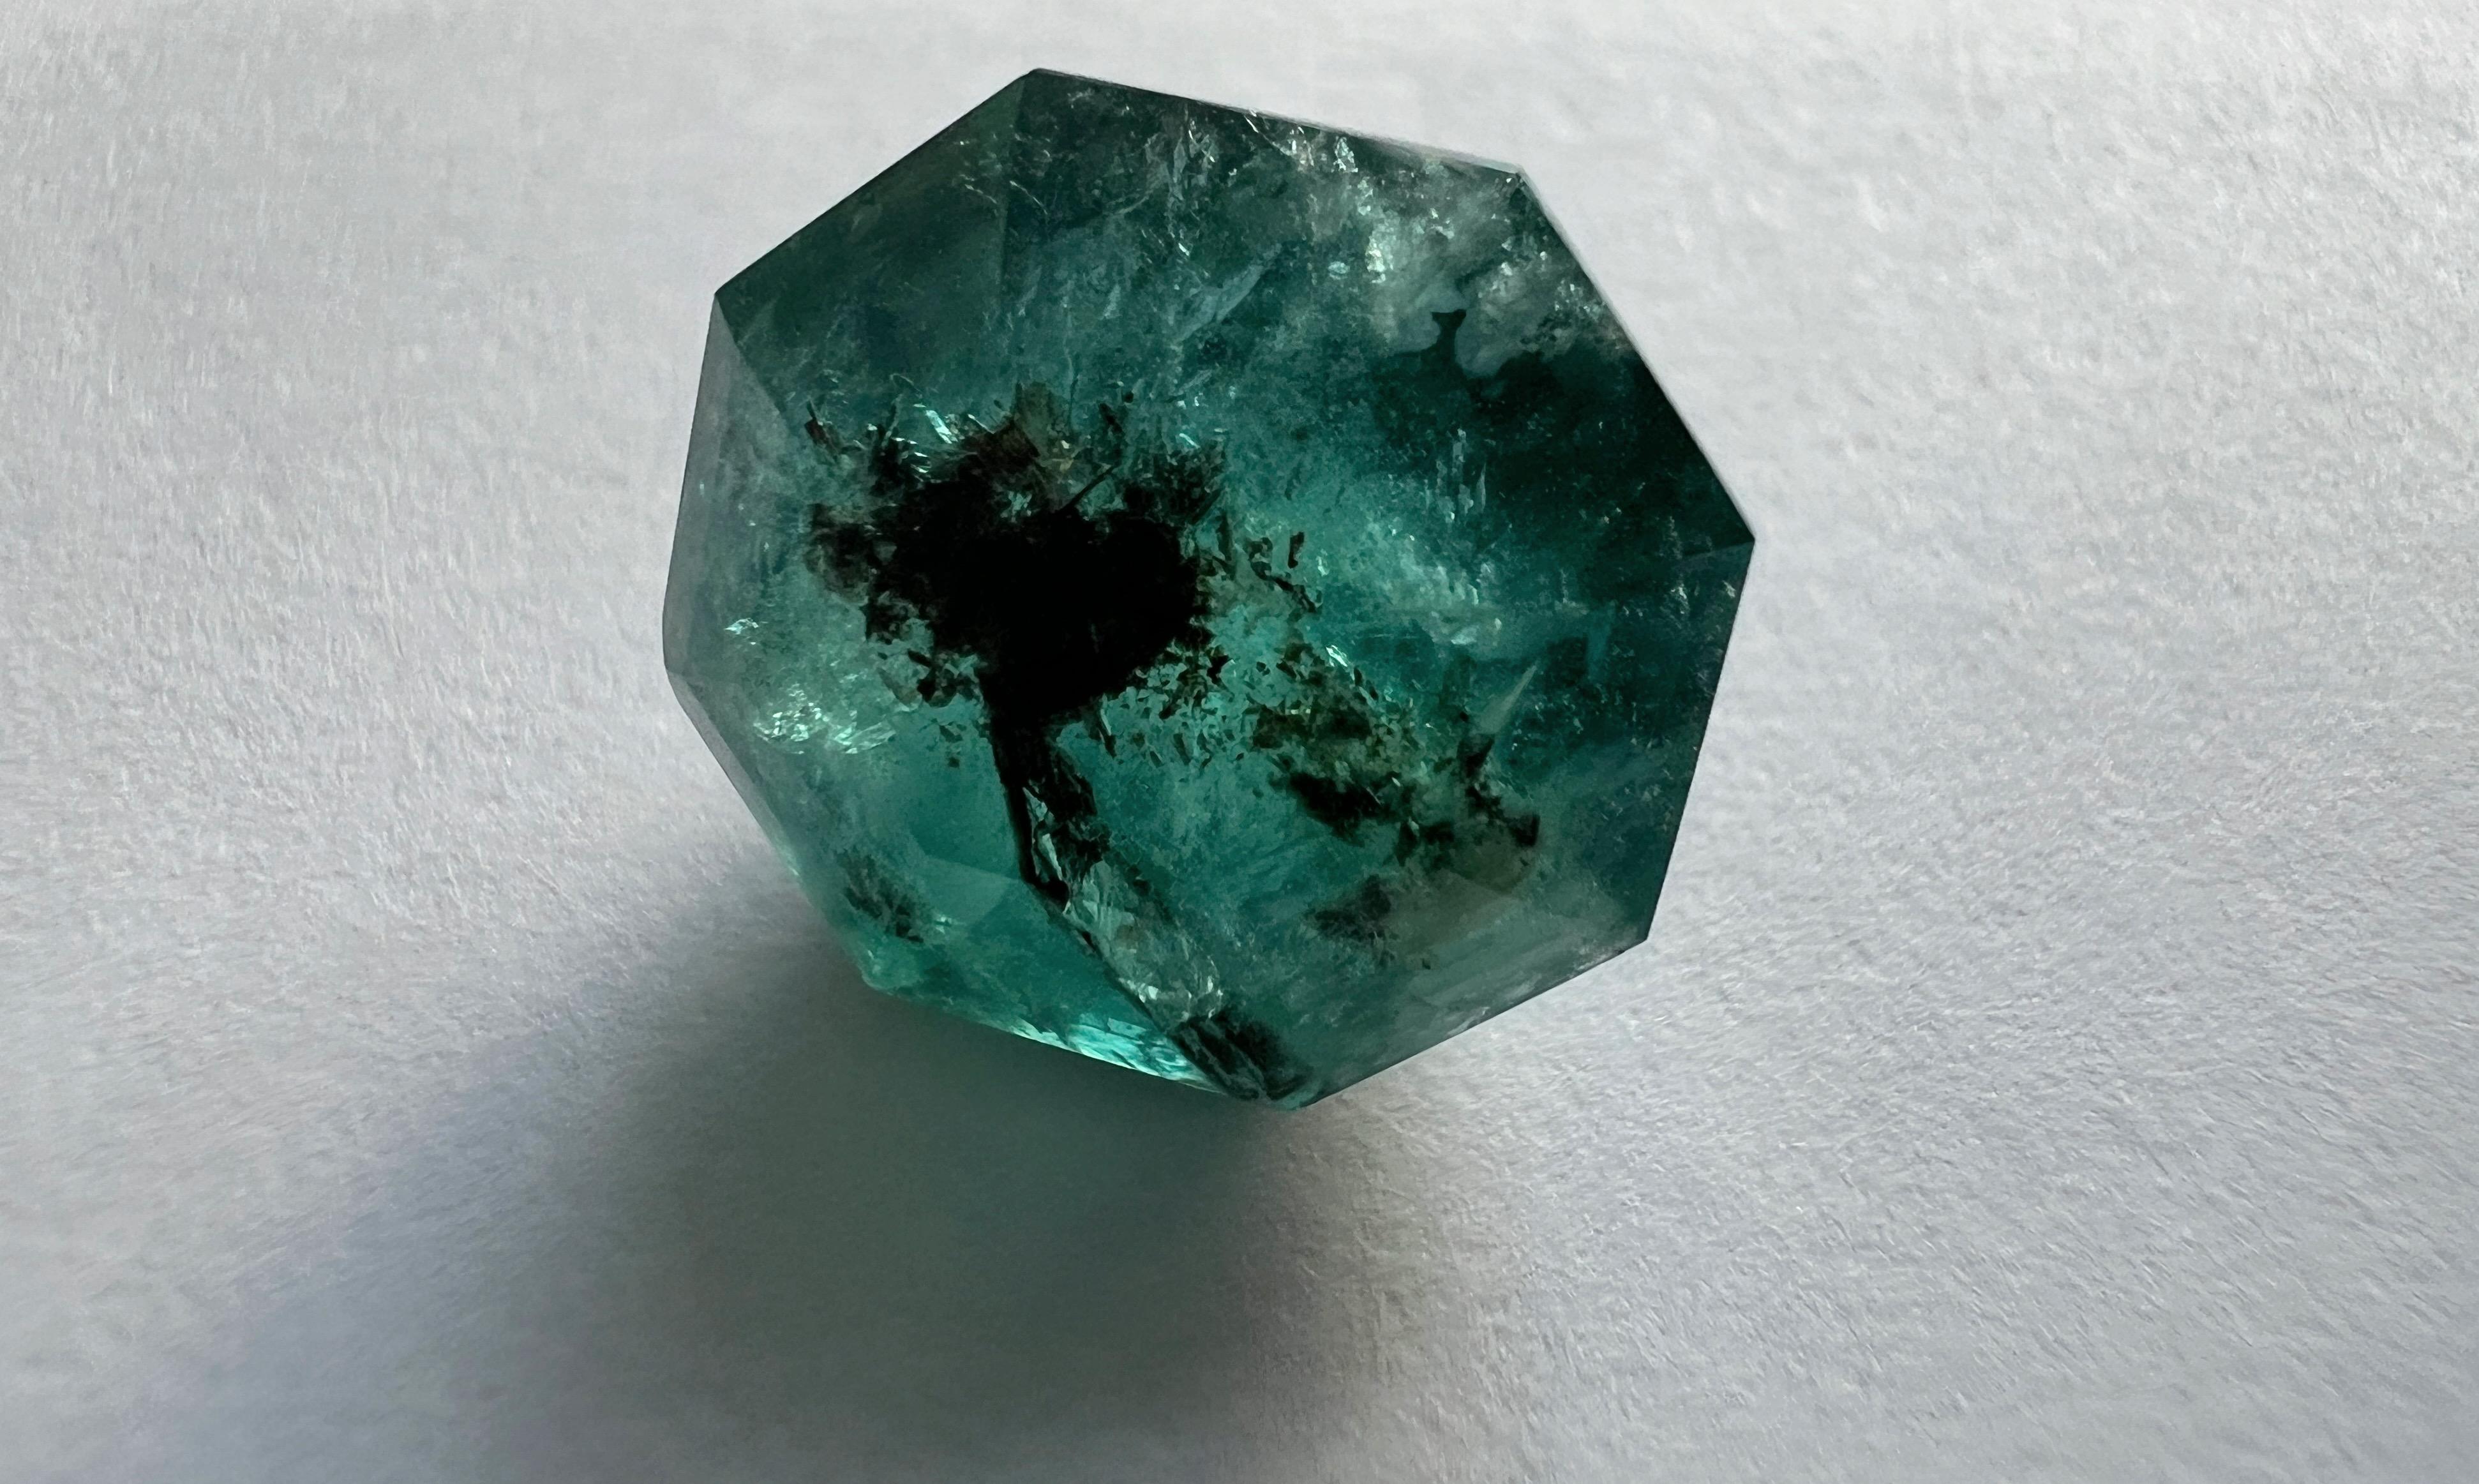 Wir stellen den Asscher Cut 8.85ct No-Oil 100% Natural Untreated Emerald Loose Gemstone vor: 
Pure Eleganz in allen Facetten. Dieser atemberaubende Edelstein ist ein Meisterwerk der Natur und zeichnet sich durch eine unvergleichliche Mischung aus